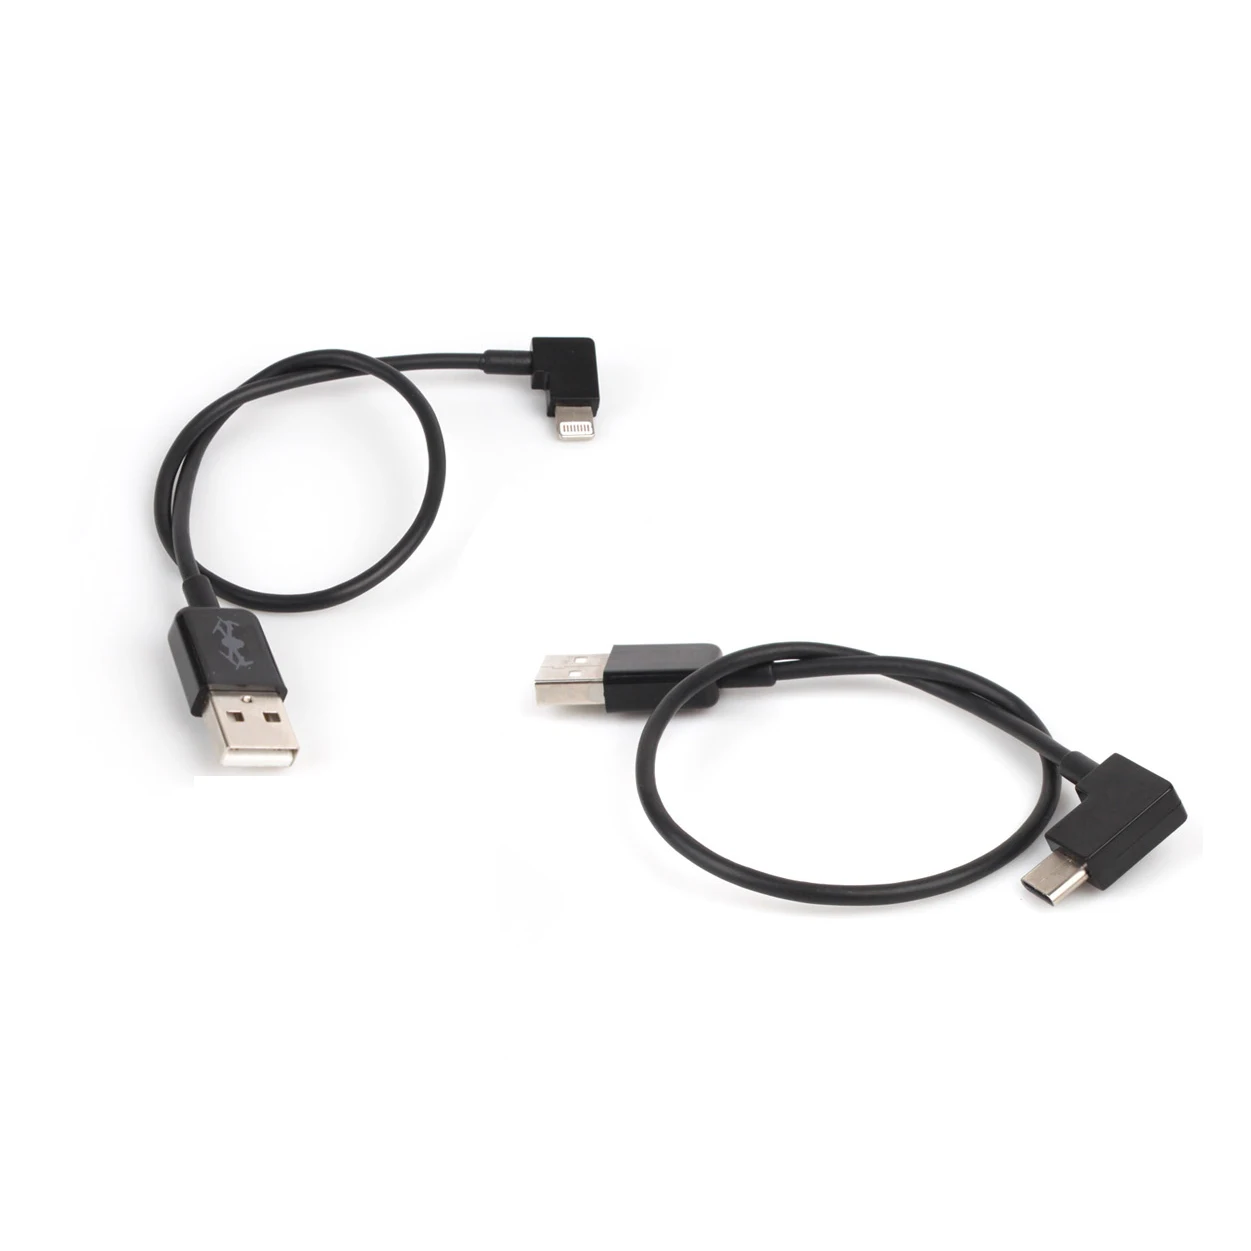 30 см кабель для передачи данных для iphone/TypeC линий/micro USB кабель для DJI Spark/MAVIC AIR/Pro/Phantom 3/4 Inspire 1/2